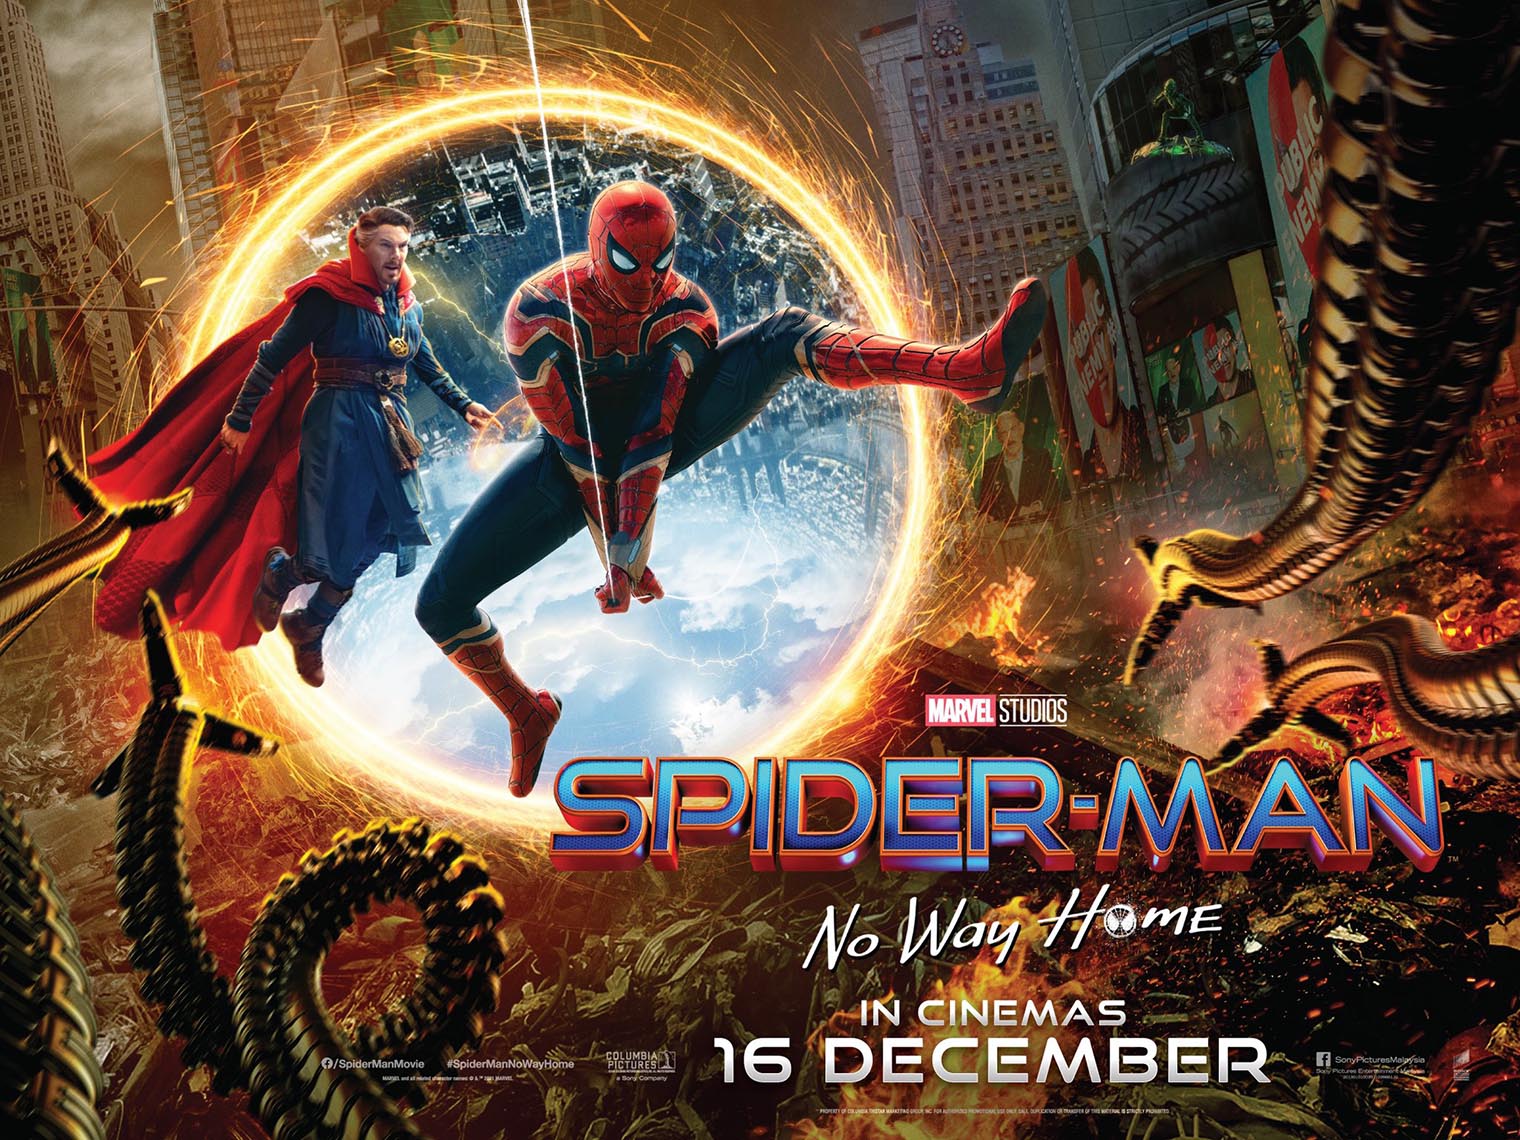 【衝撃】劇場がスパイダーマン:ノー・ウェイ・ホームの新画像を公開 / 映画館向けポスターか